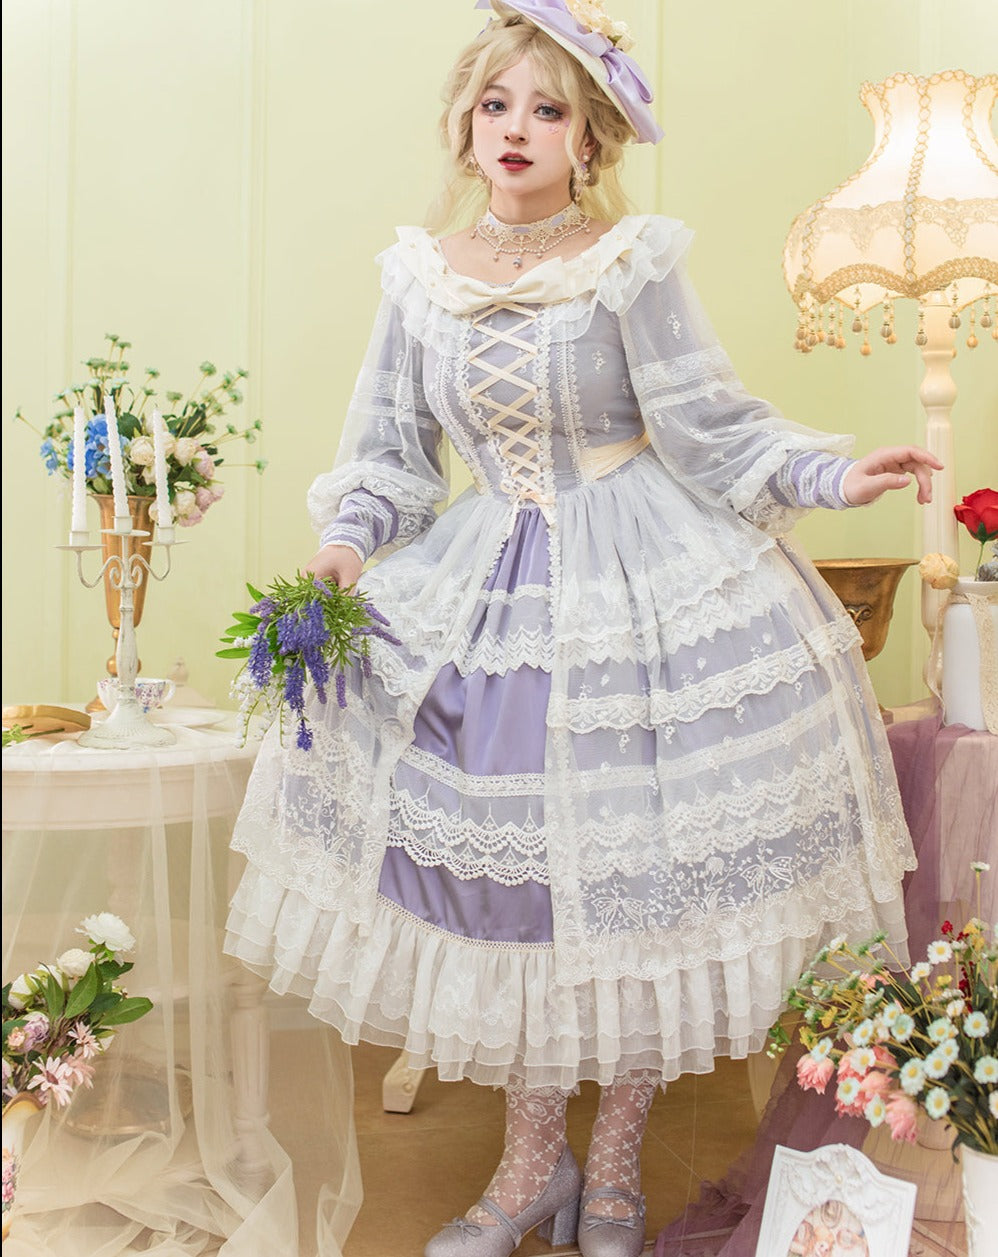 【予約販売】鈴蘭の花刺繍 オープンスカート エレガントドレス